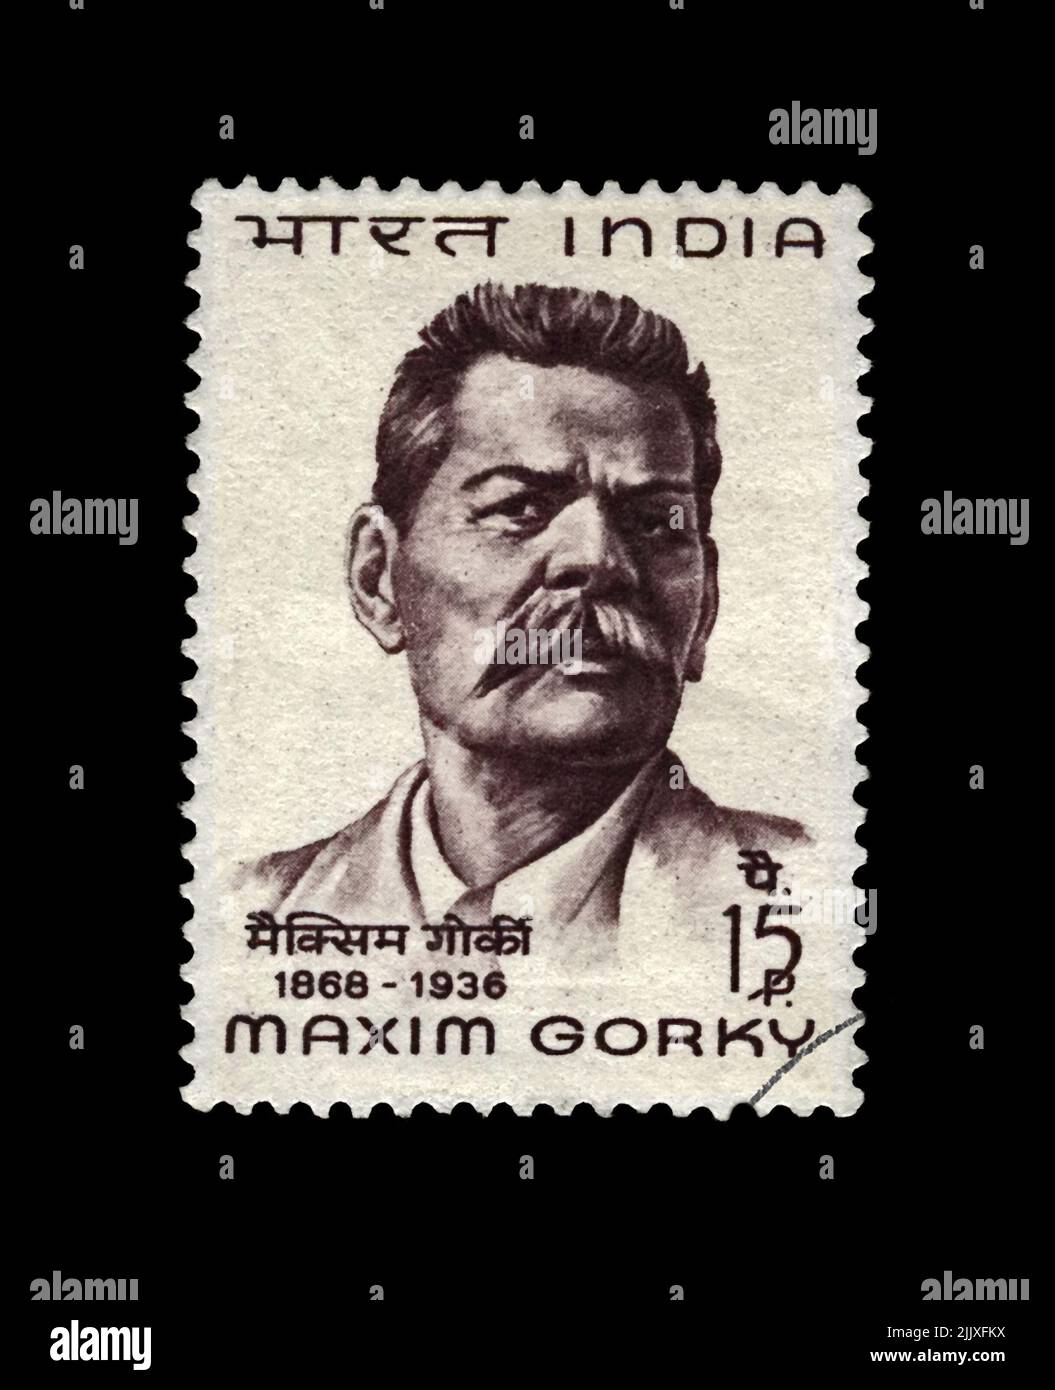 Maxim Gorky aka Alexei Peshkov (1868-1936), berühmter russischer Schriftsteller, Dramatiker, Politiker, um 1968. Abgesagte Briefmarke gedruckt in Indien isoliert Stockfoto